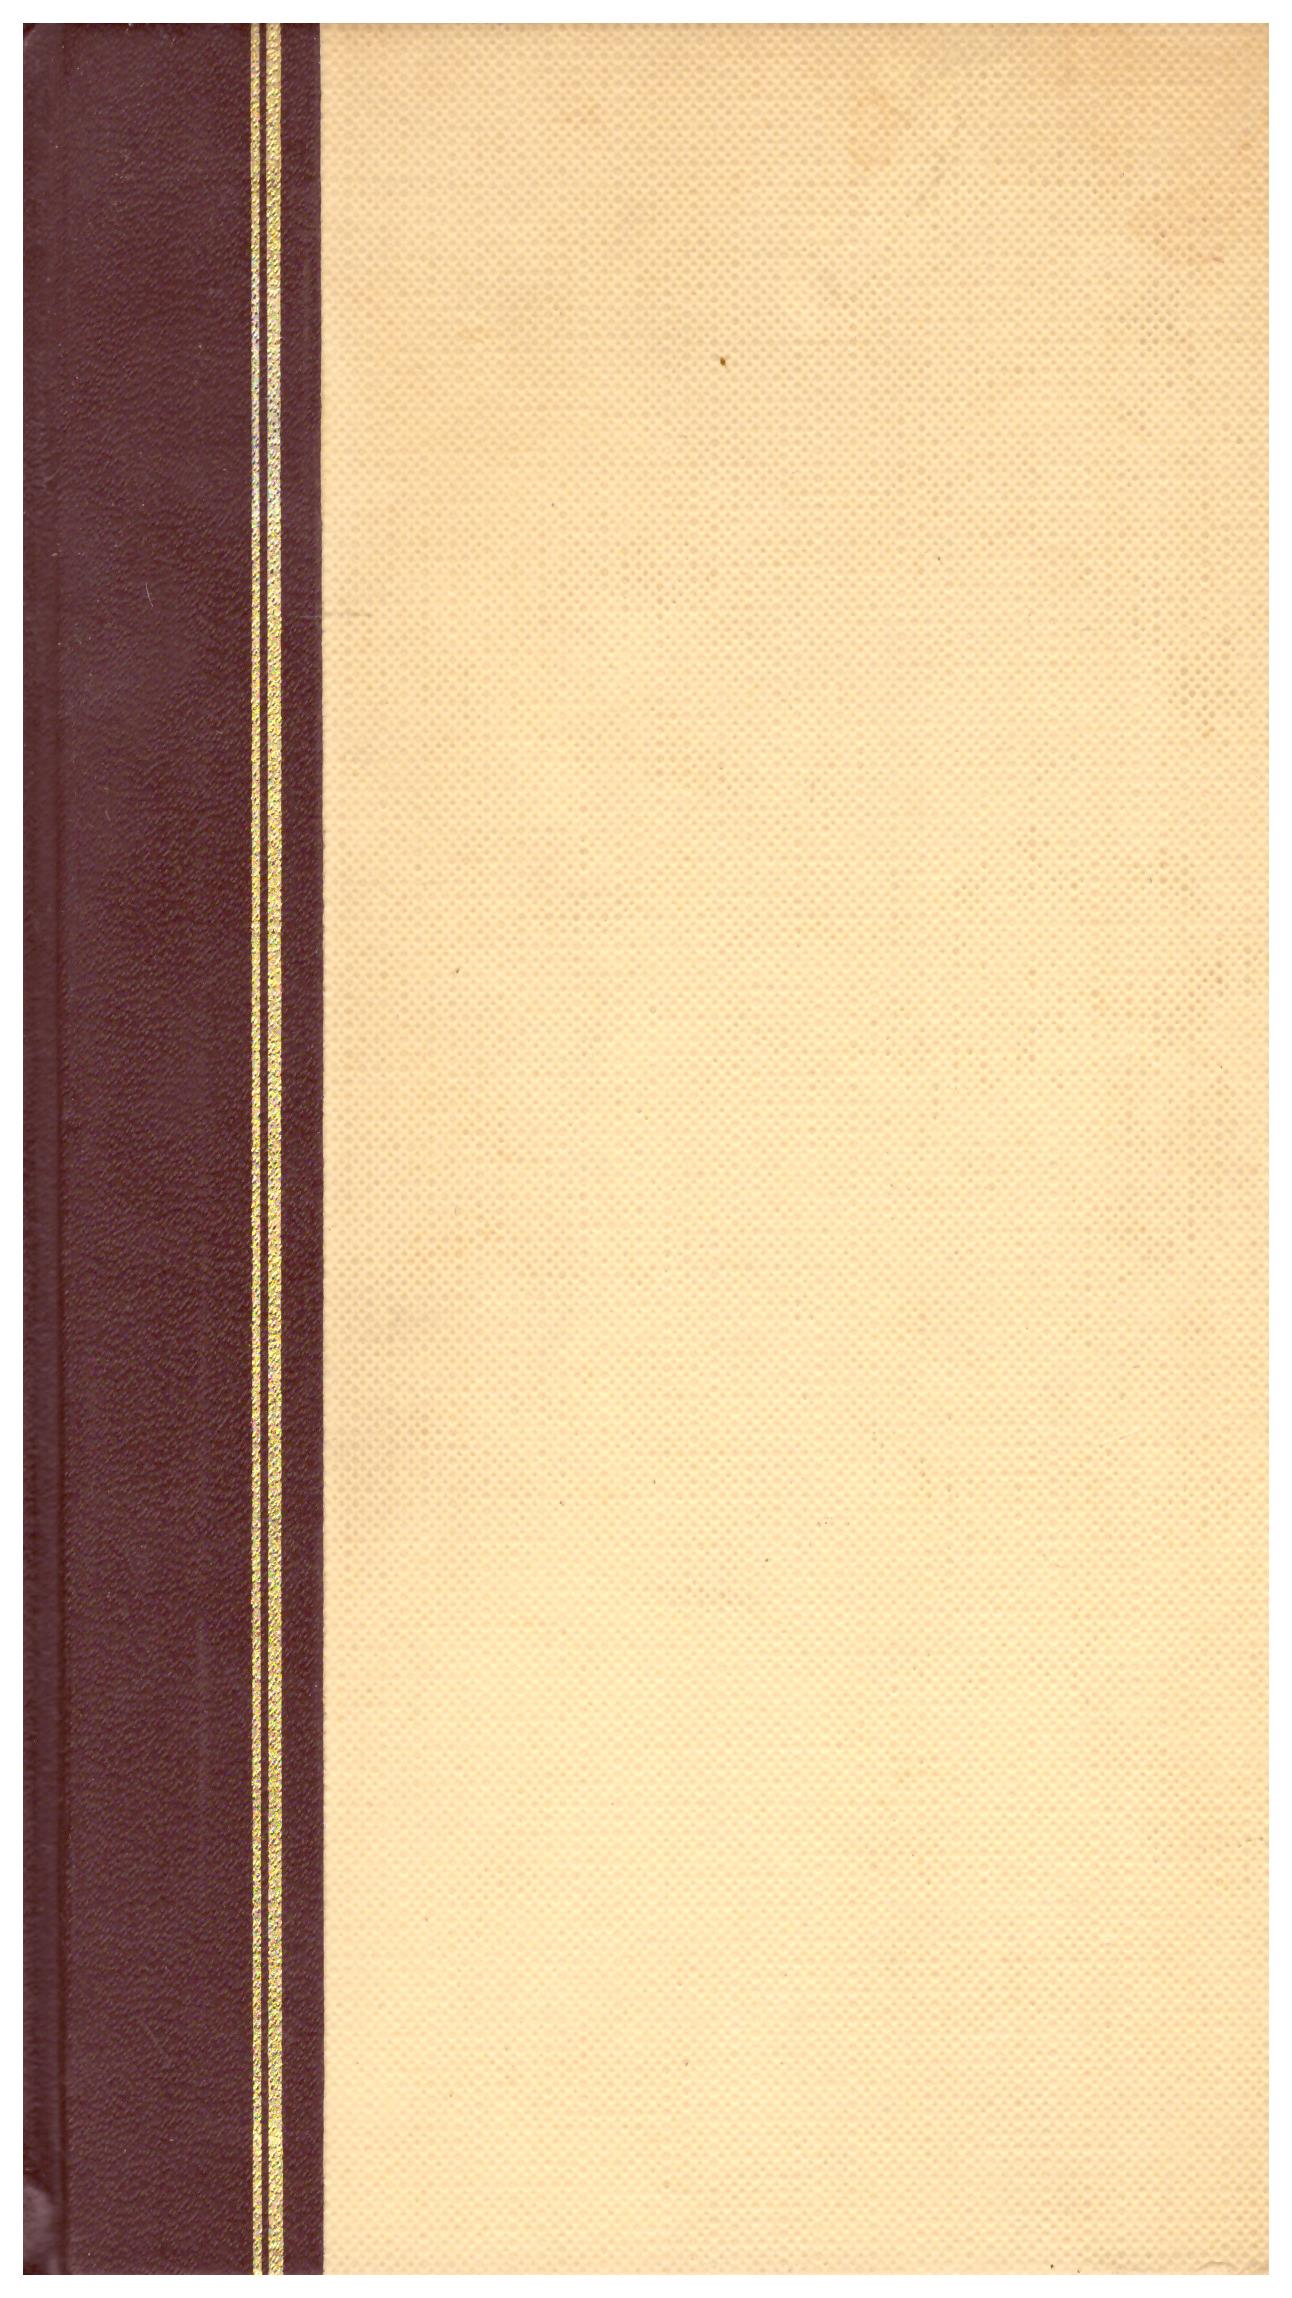 Titolo: La tragedia di Romeo e Giulietta Autore: W. Shakespeare Editore: mondadori, 1970